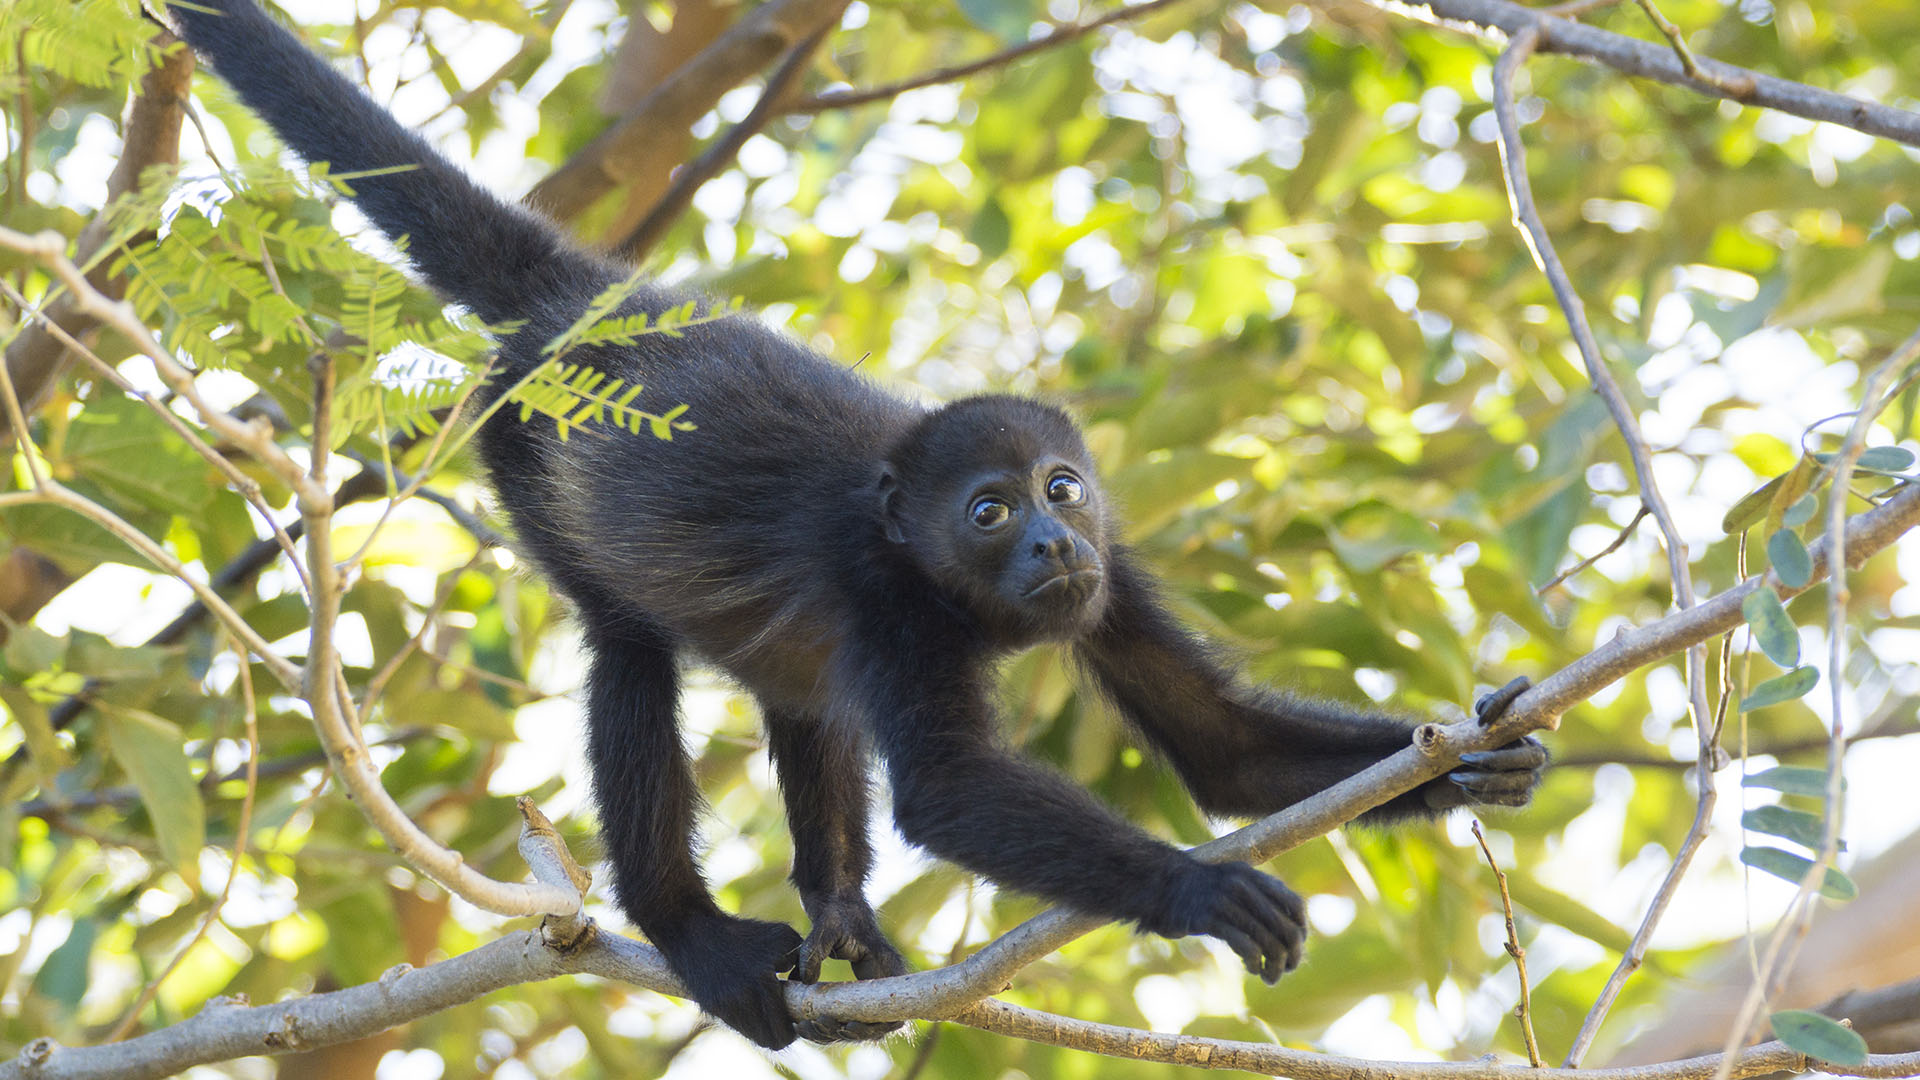 En Argentina, la provincia de Corrientes declaró al mono carayá o aullador “monumento natural” a través de una ley para protegerlo generando expectativas más optimistas sobre su futuro (Getty)